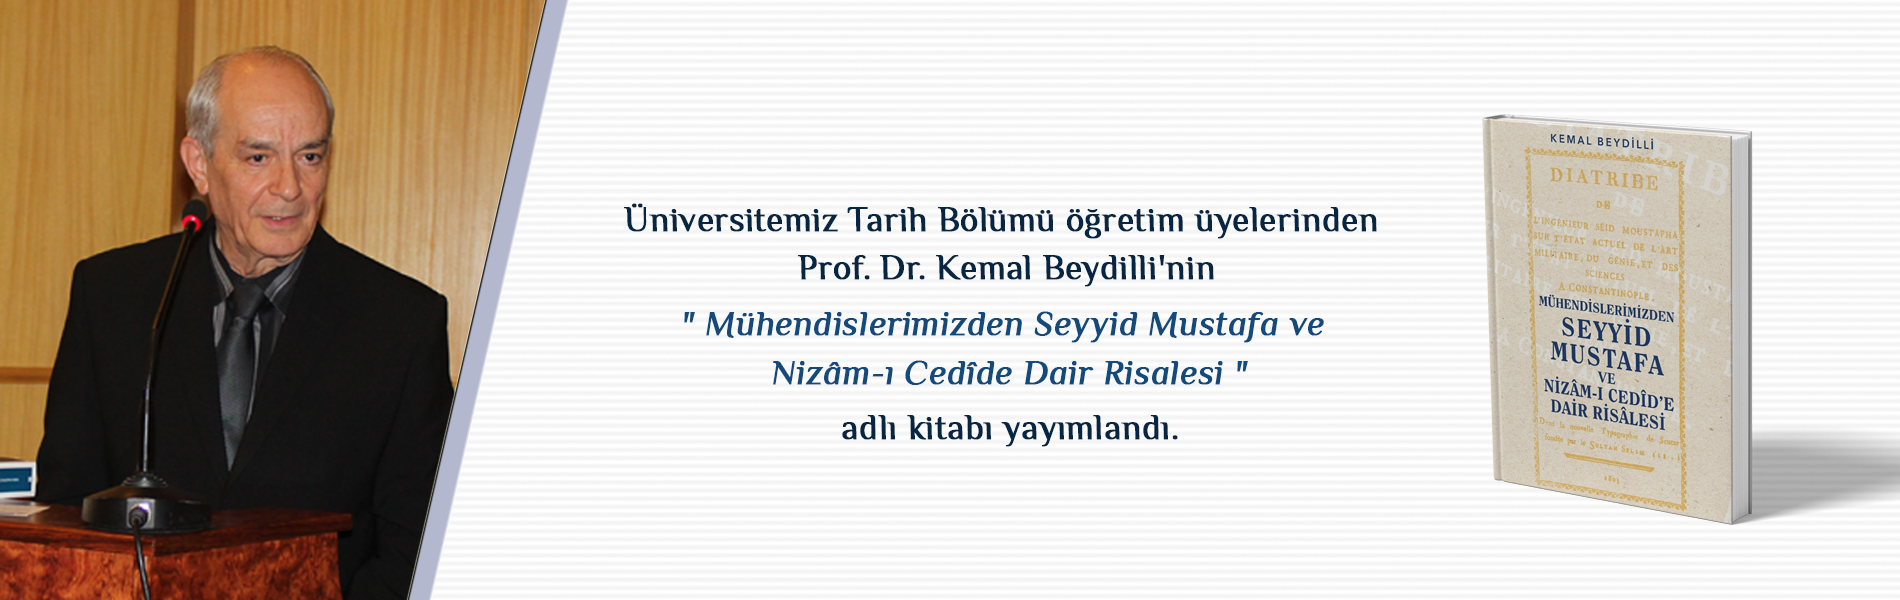 Üniversitemiz Tarih Bölümü Öğretim Üyelerinden Prof. Dr. Kemal Beydilli'nin "Mühendislerimizden Seyyid Mustafa ve Nizâm-ı Cedîde Dair Risalesi" Adlı Kitabı Yayımlandı